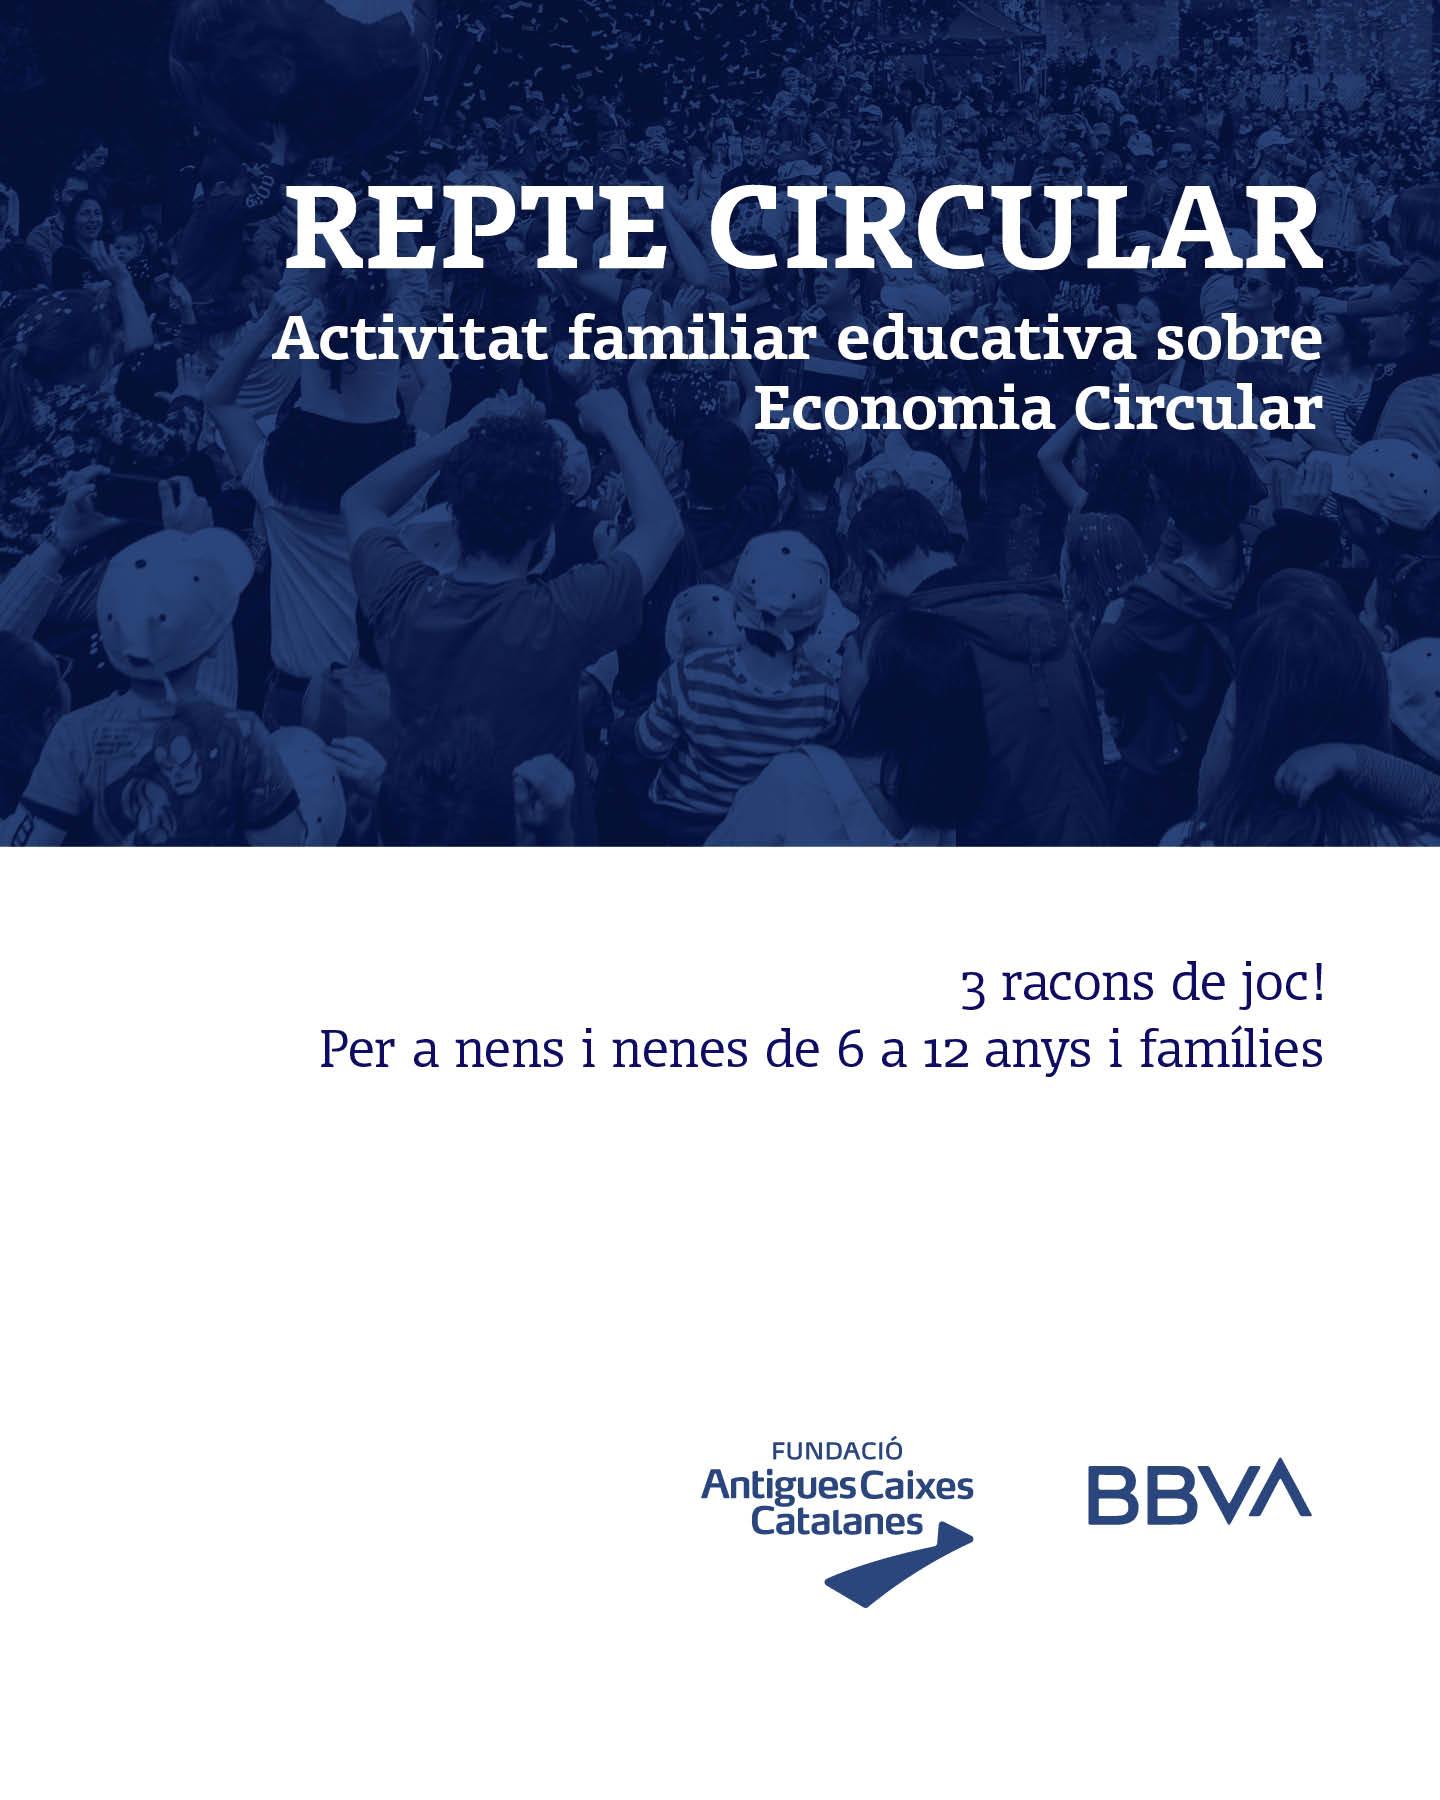 Repte Circular, taller lúdic sobre Economia Circular, a La Tamborinada